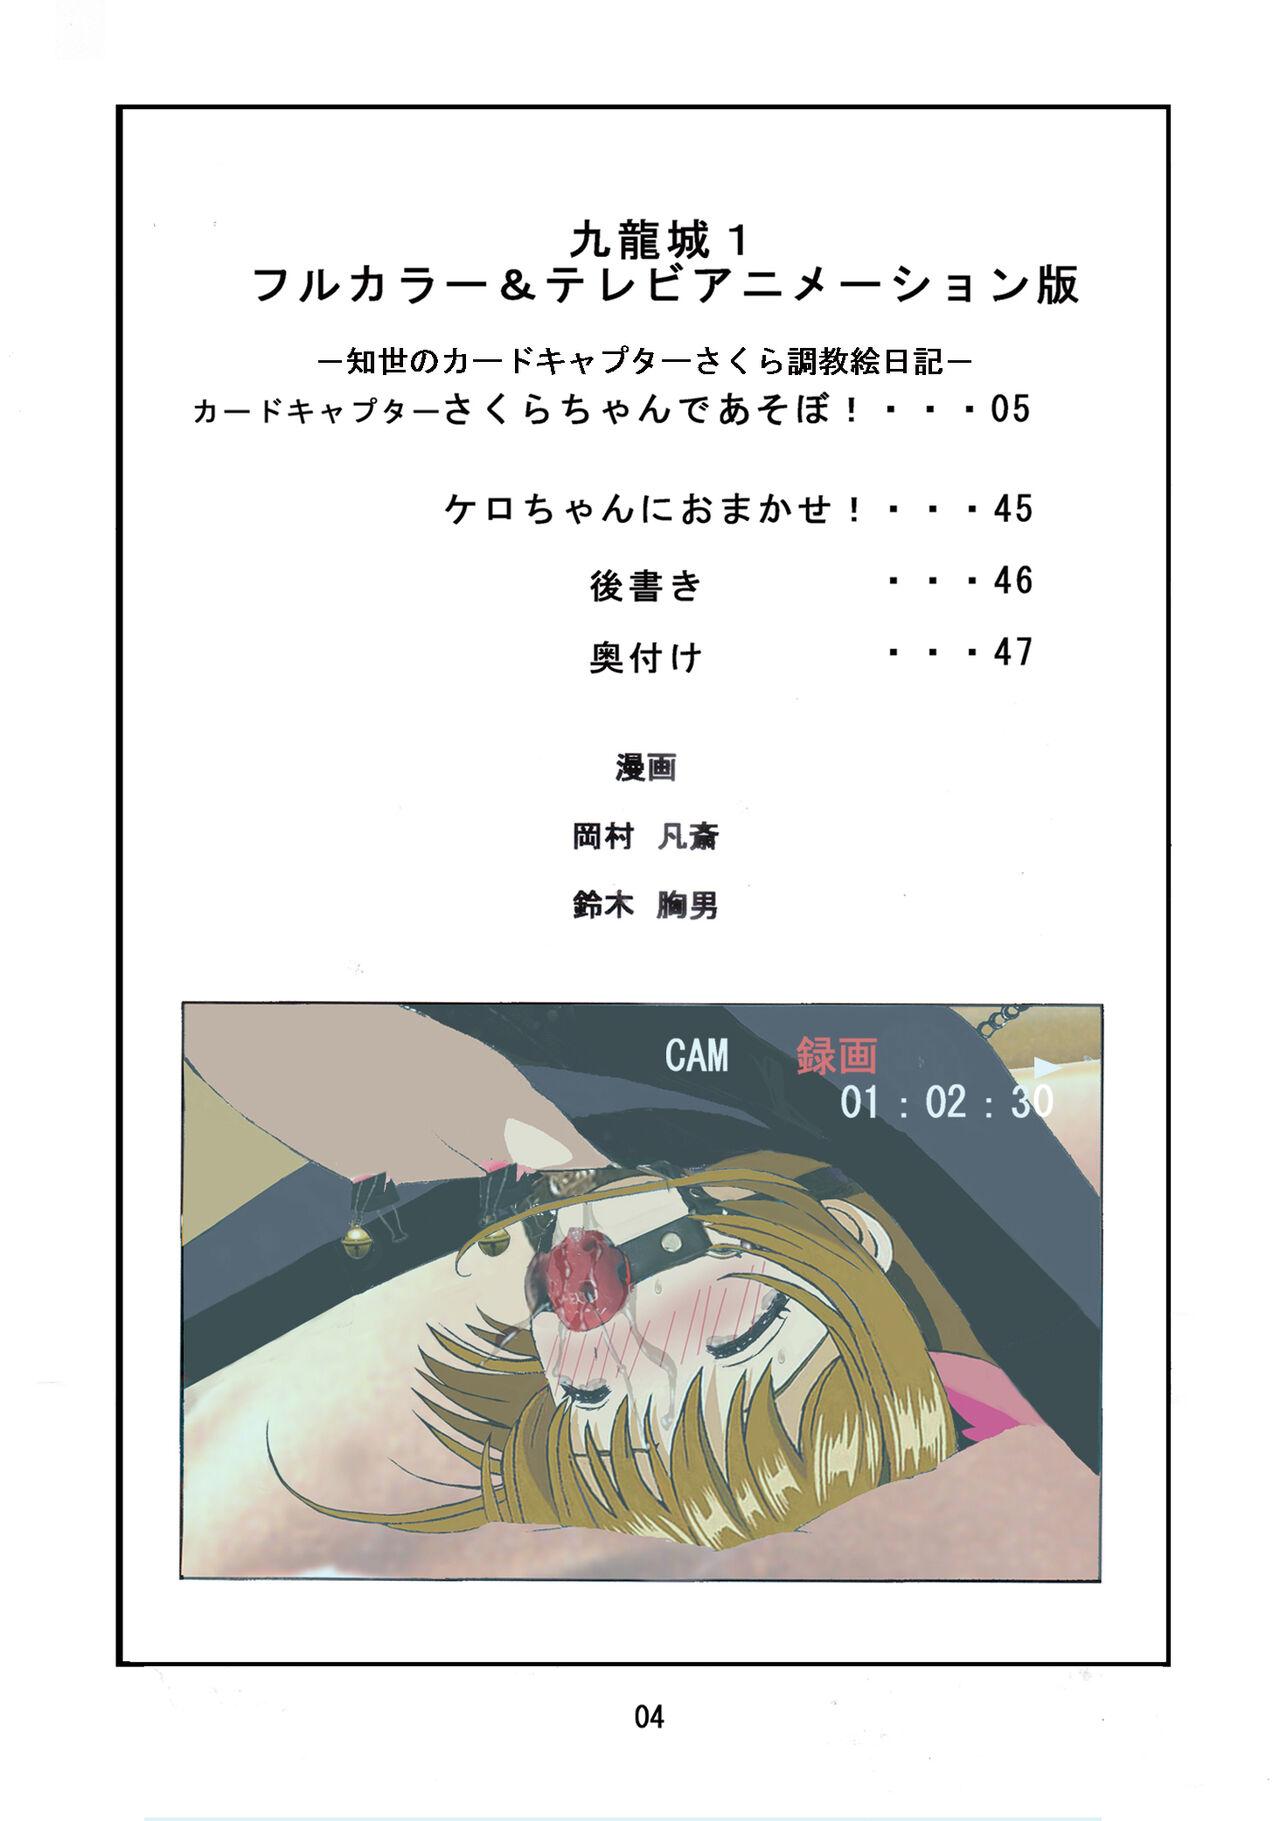 Chick Kuuronziyou 1 Full Color & TV Animation Ban - Cardcaptor sakura Boobs - Picture 3